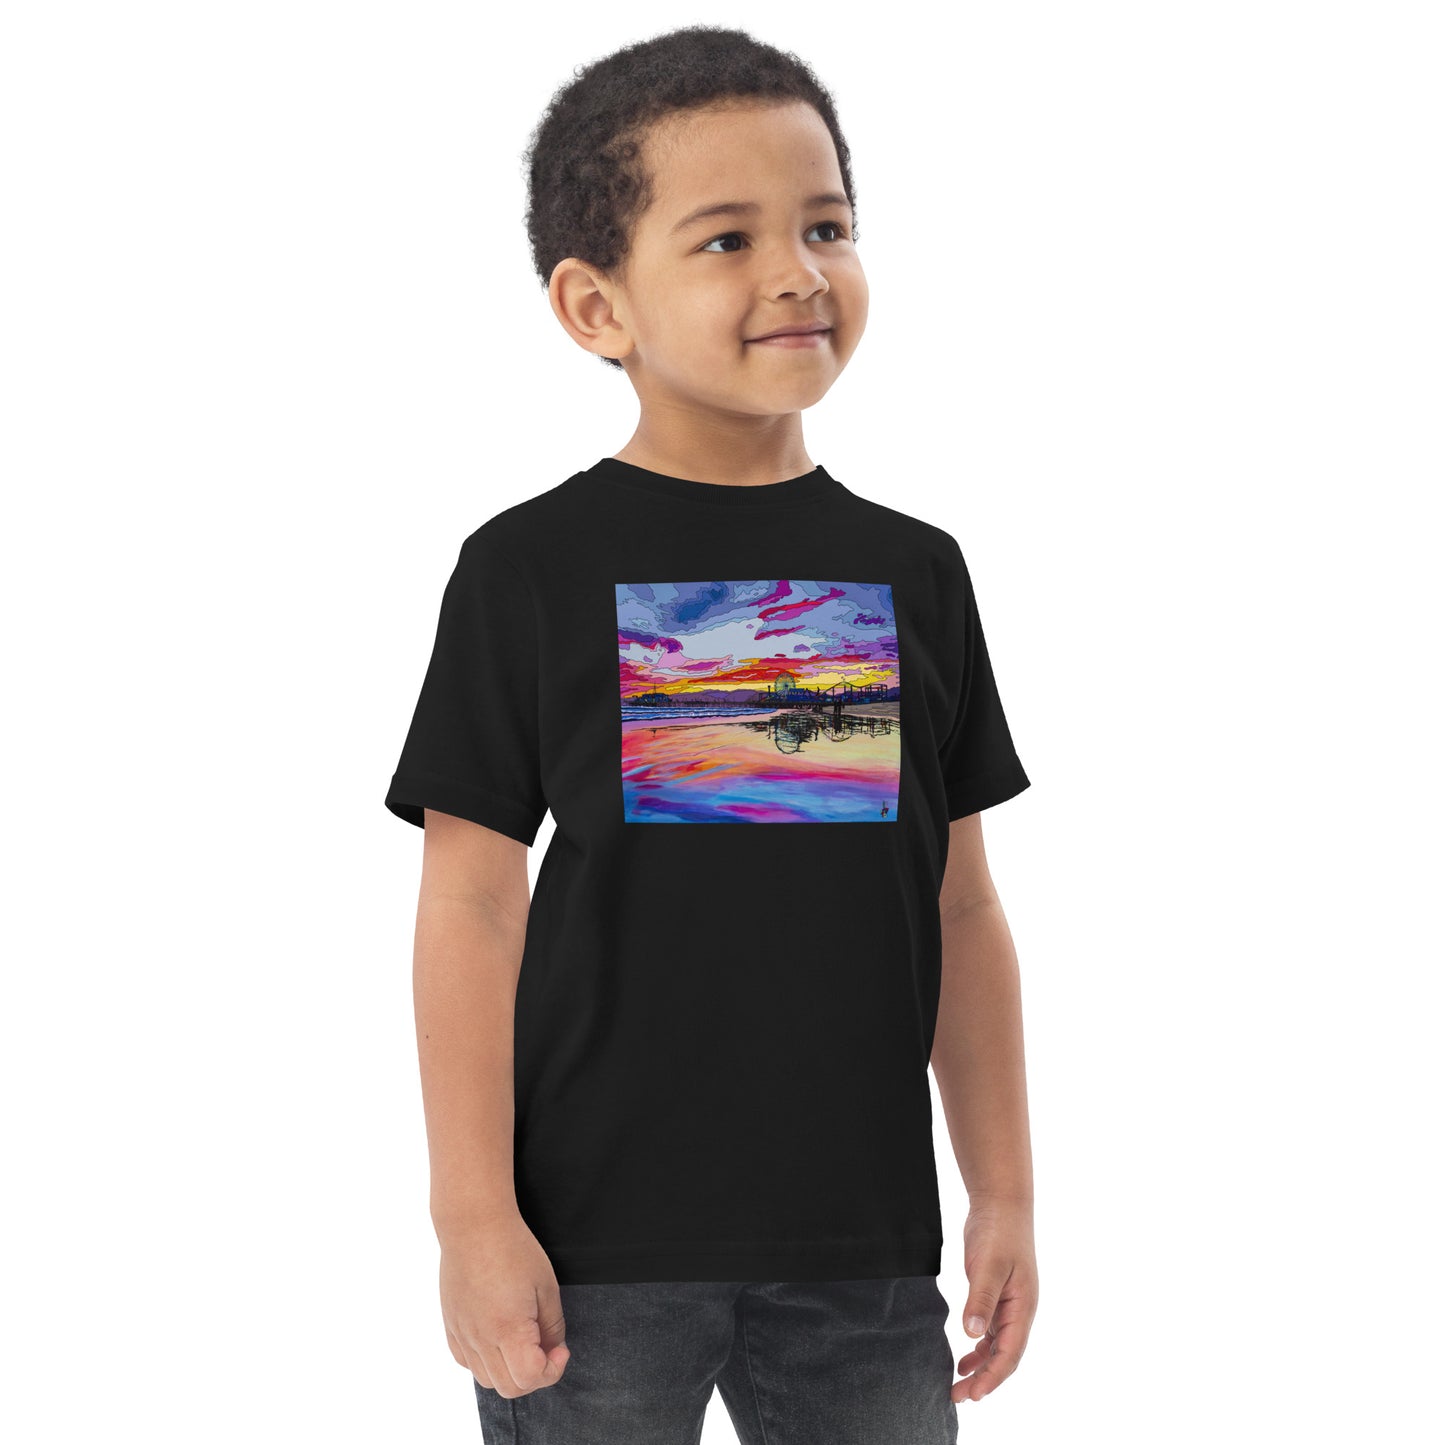 Santa Monica Pier 2 - Toddler jersey t-shirt